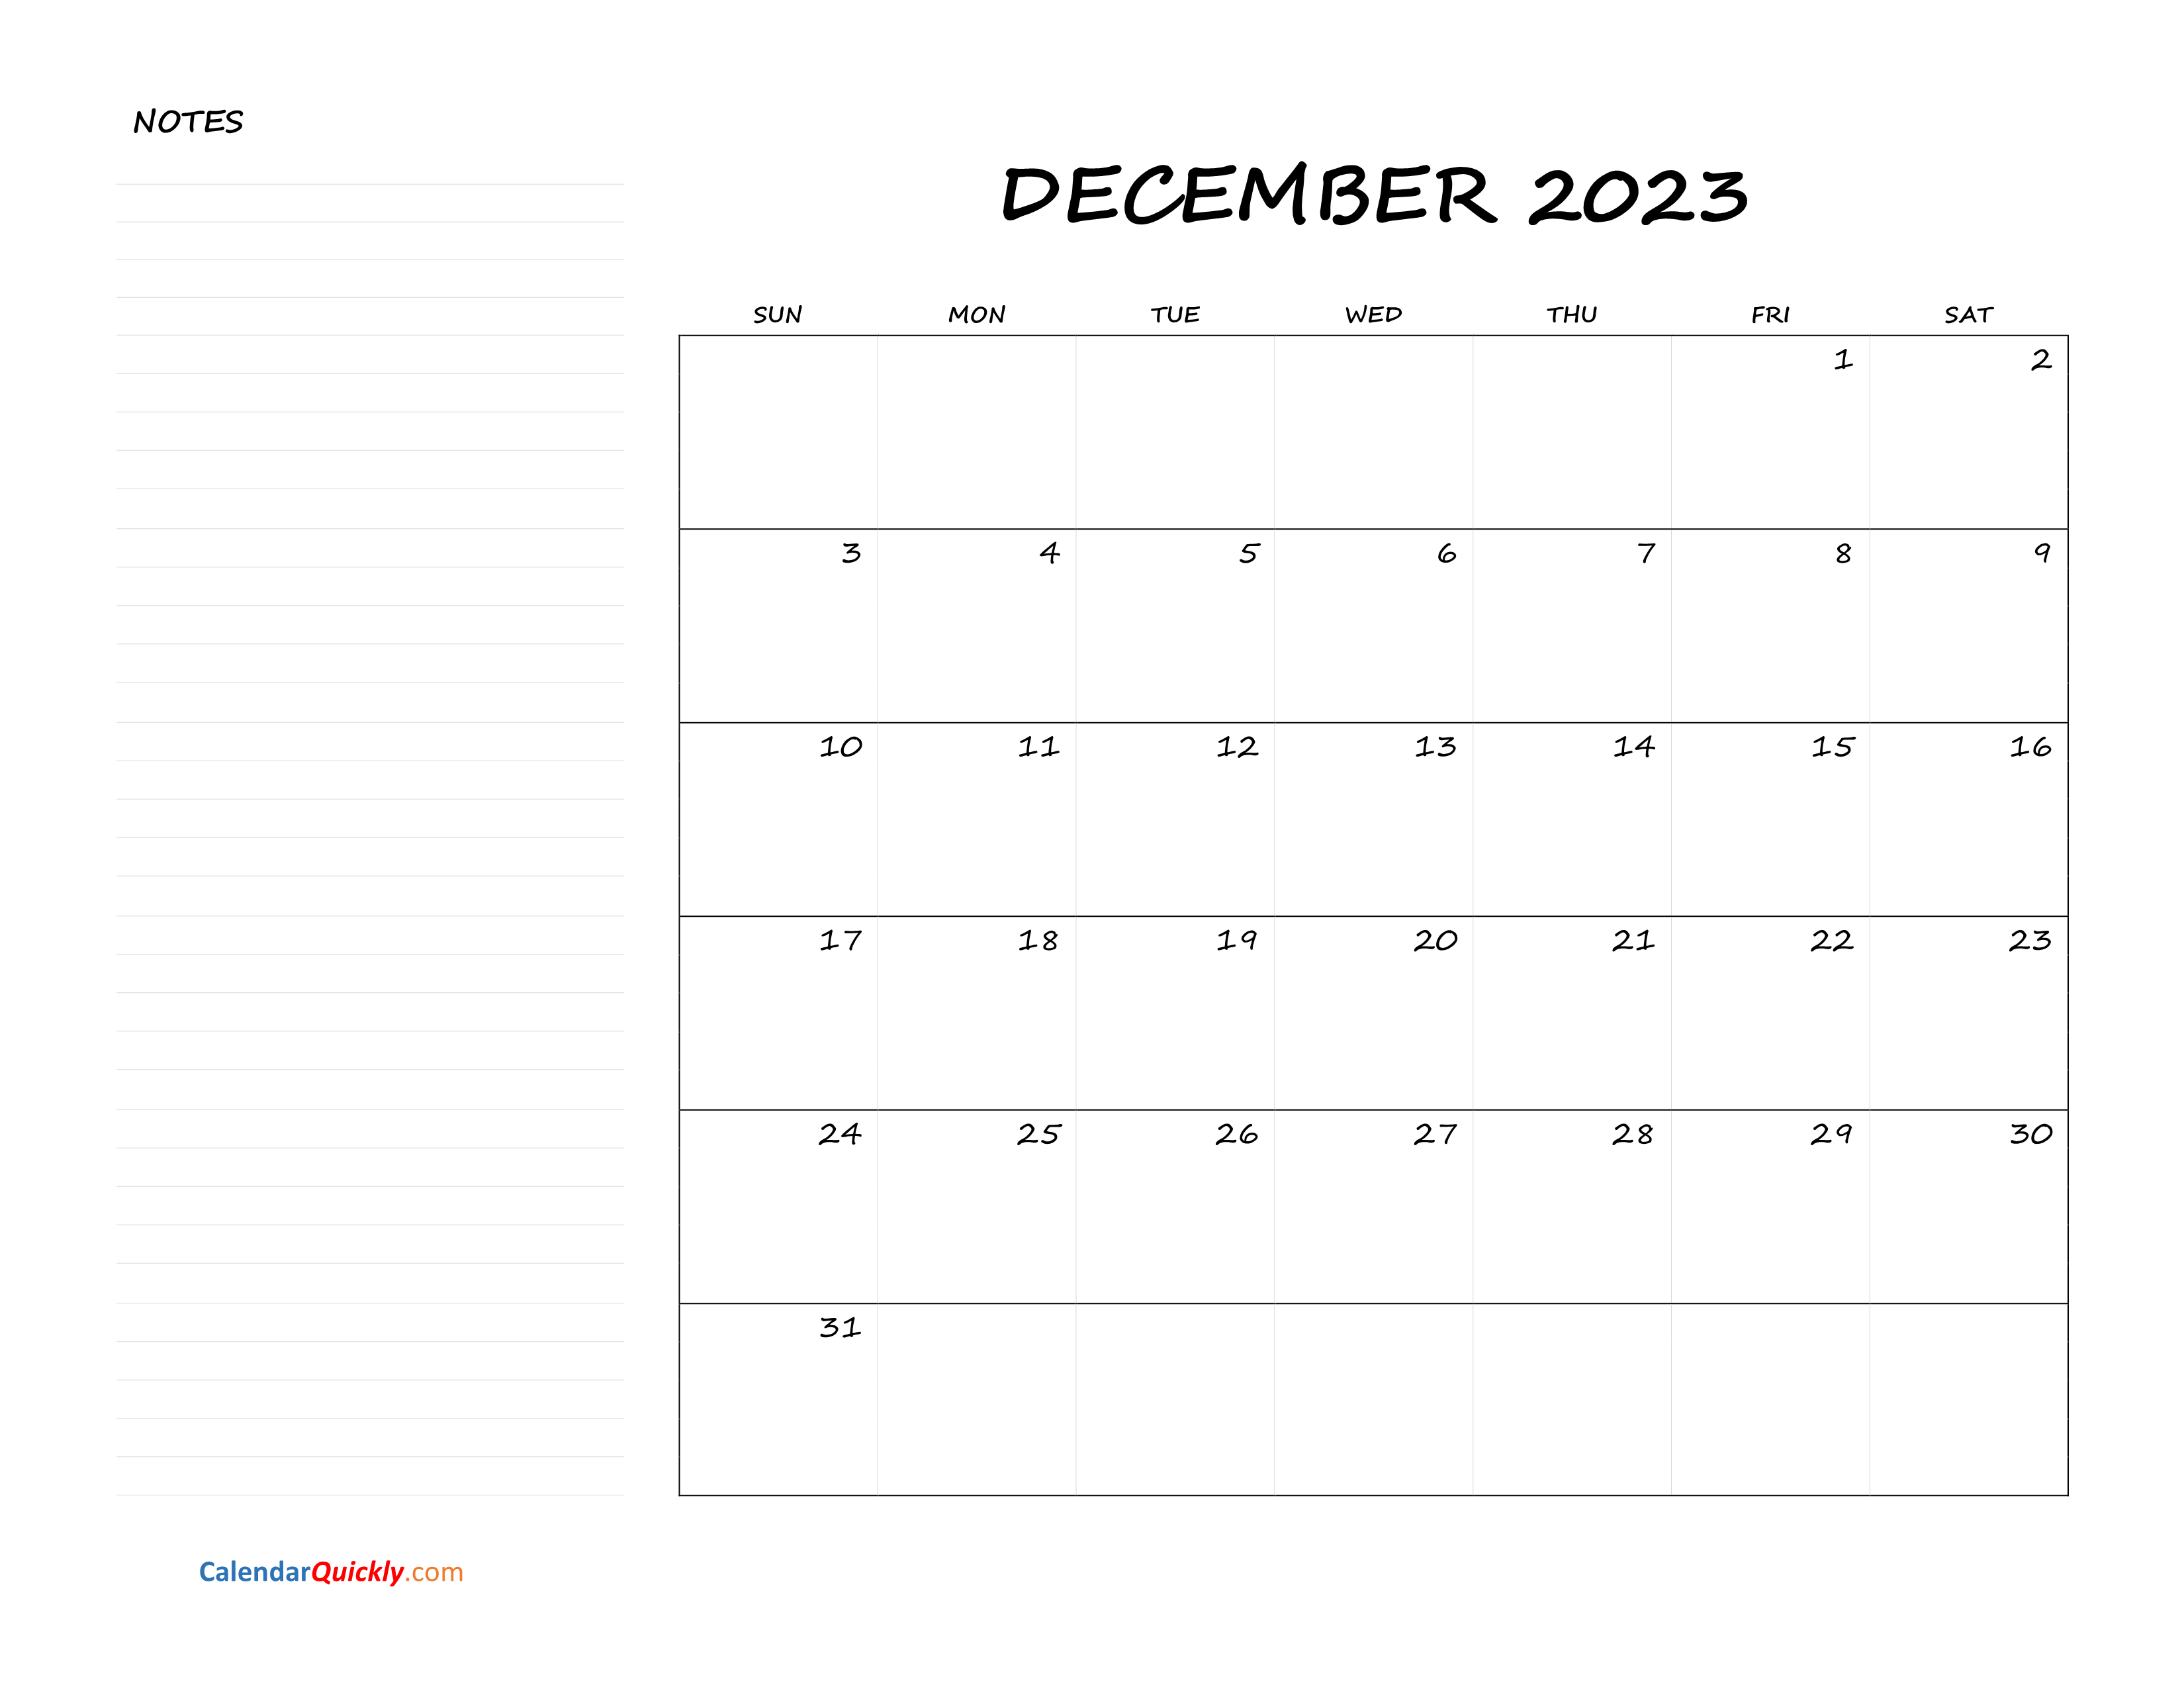 december-blank-calendar-2023-with-notes-calendar-quickly